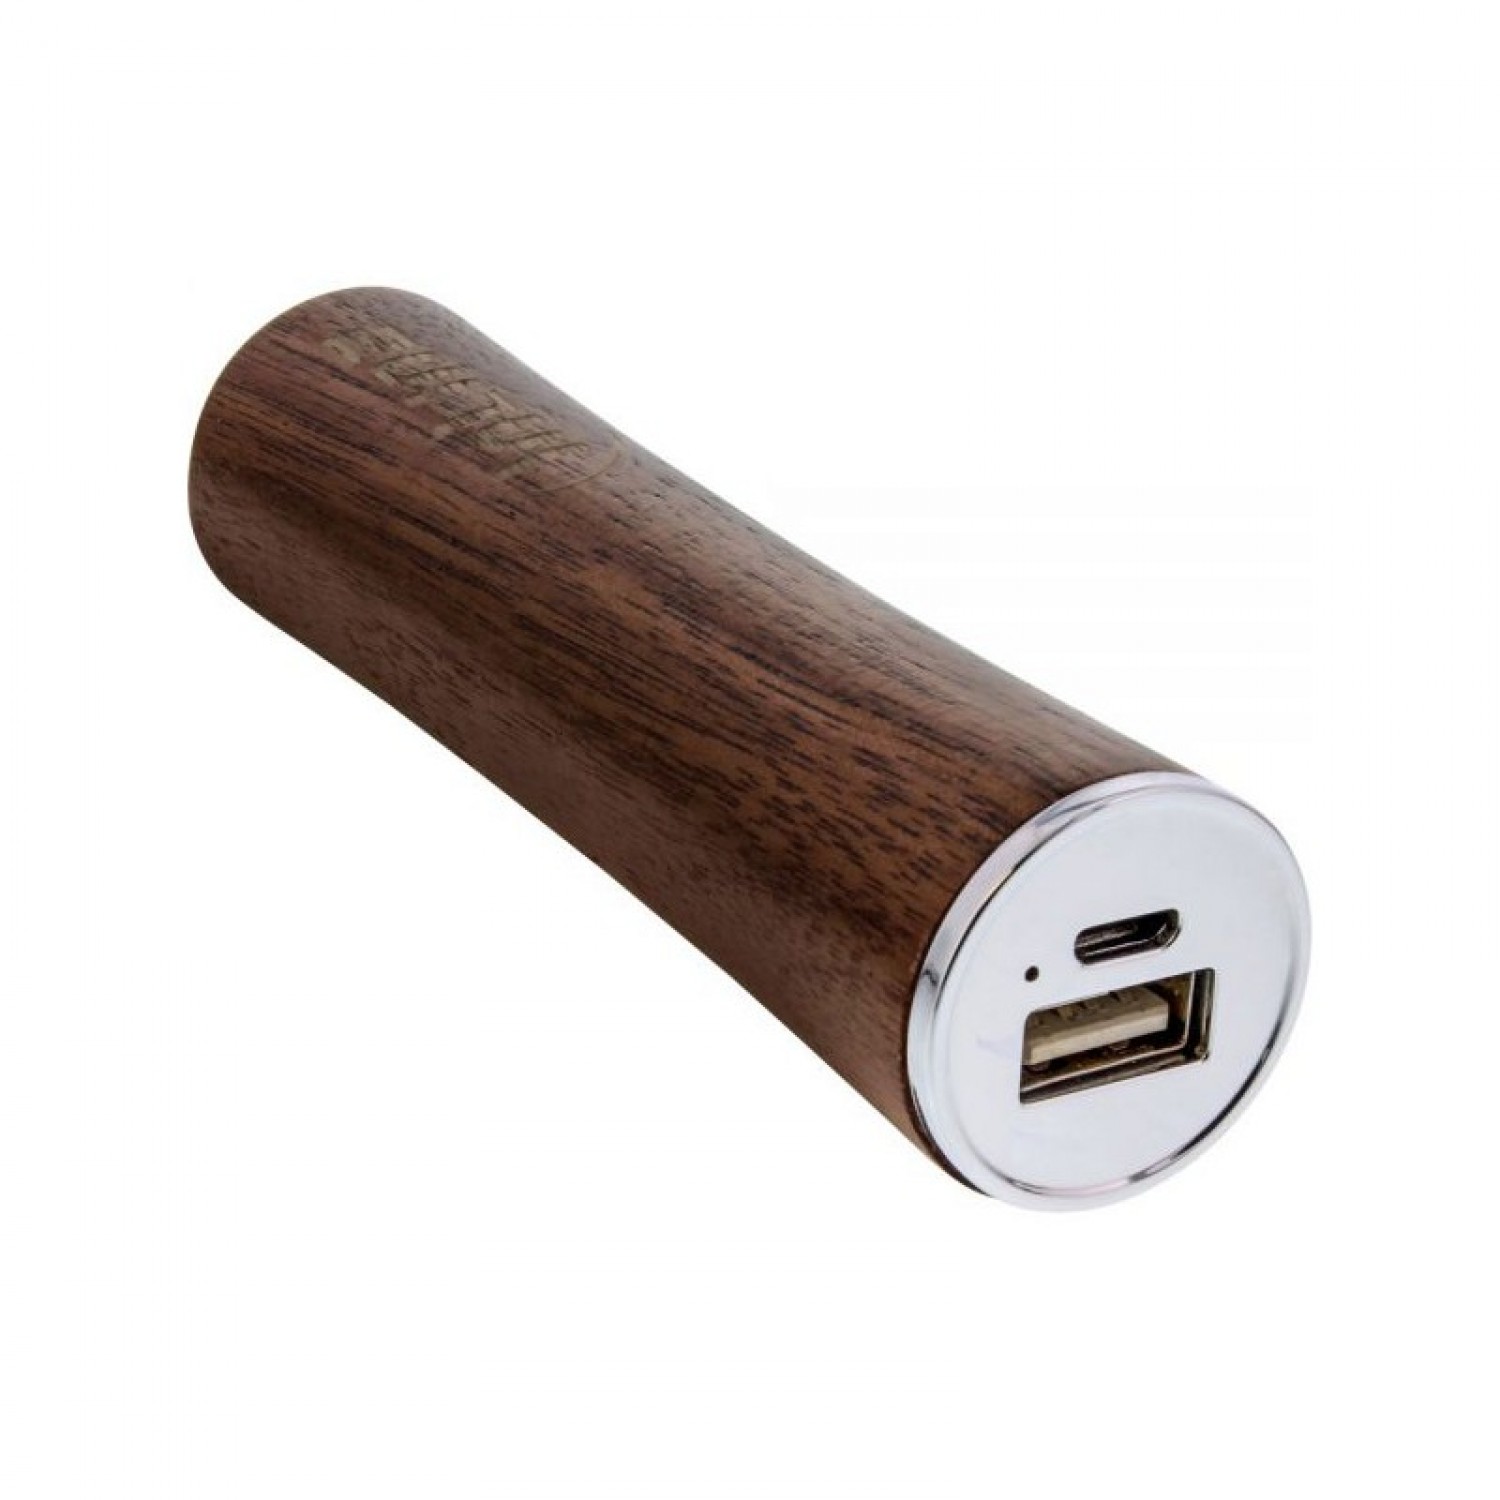 InLine® woodpower USB Powerbank from Walnut Wood